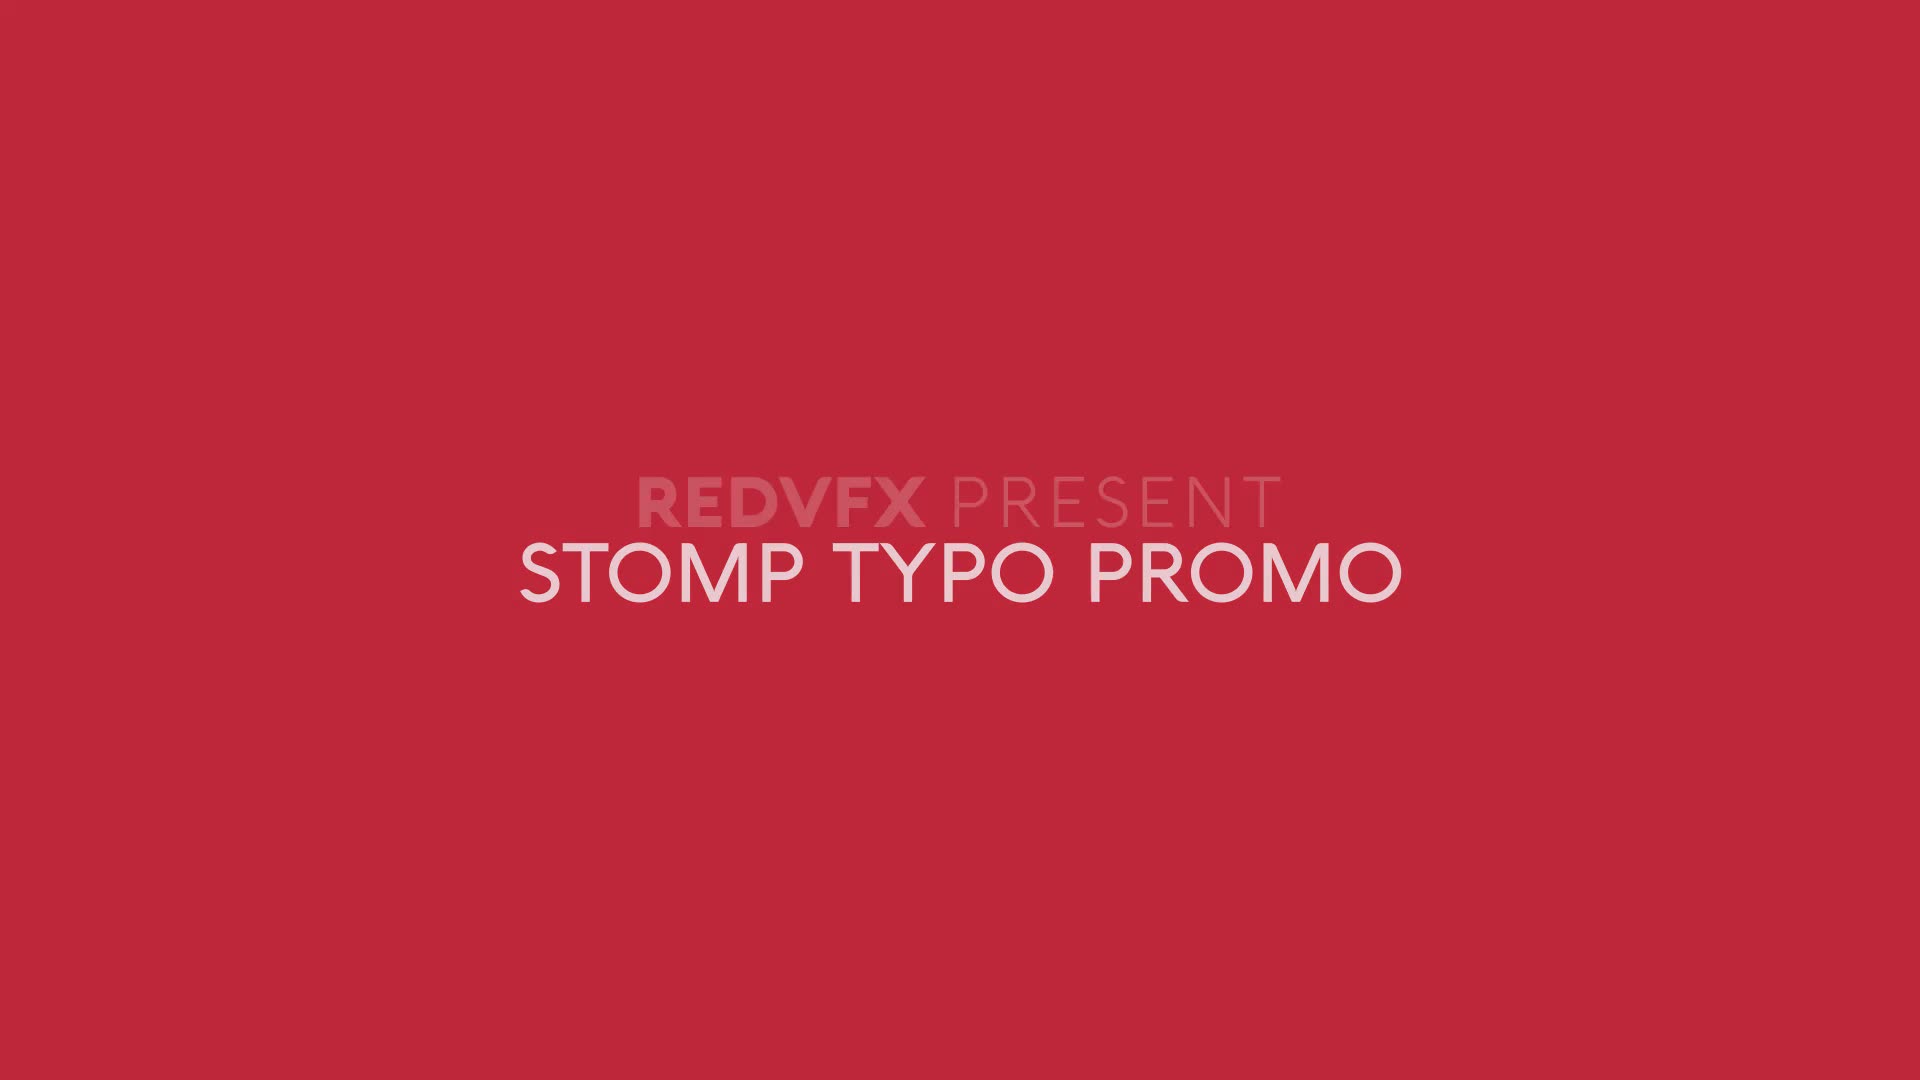 Stomp Typo Promo for Premiere Pro Videohive 34333788 Premiere Pro Image 2